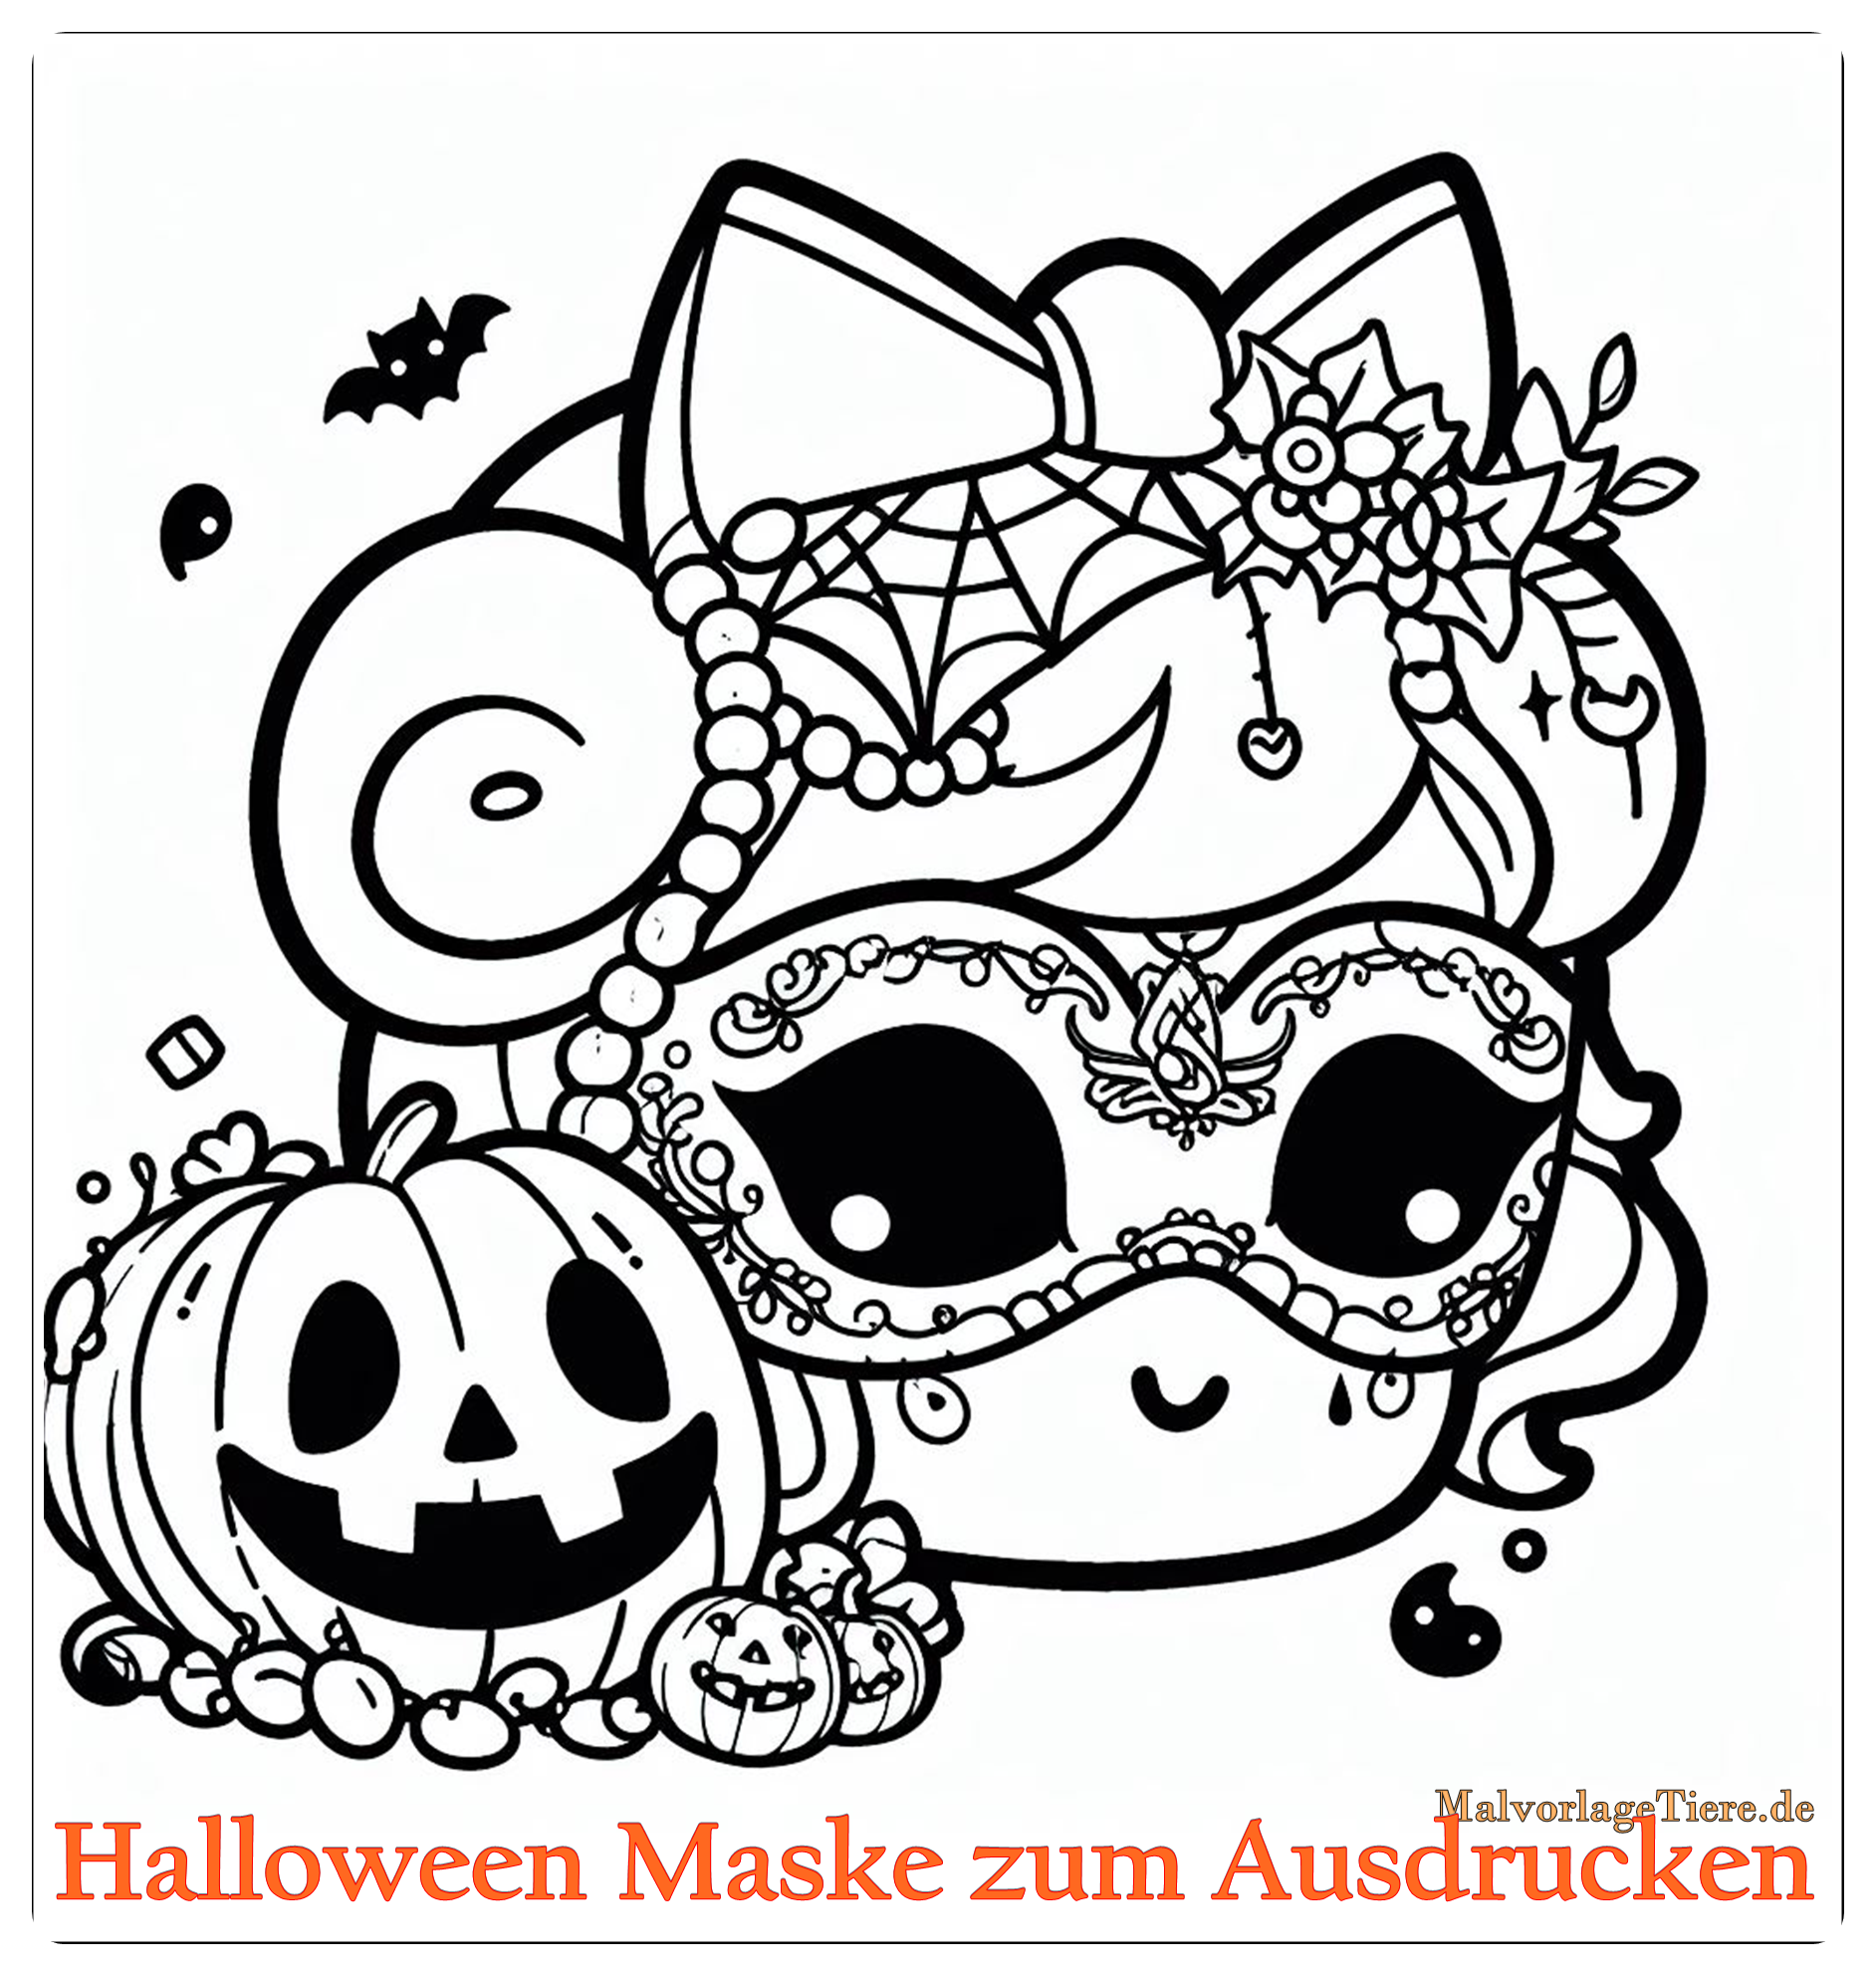 Halloween Maske zum Ausdrucken 02 by malvorlagetiere.de